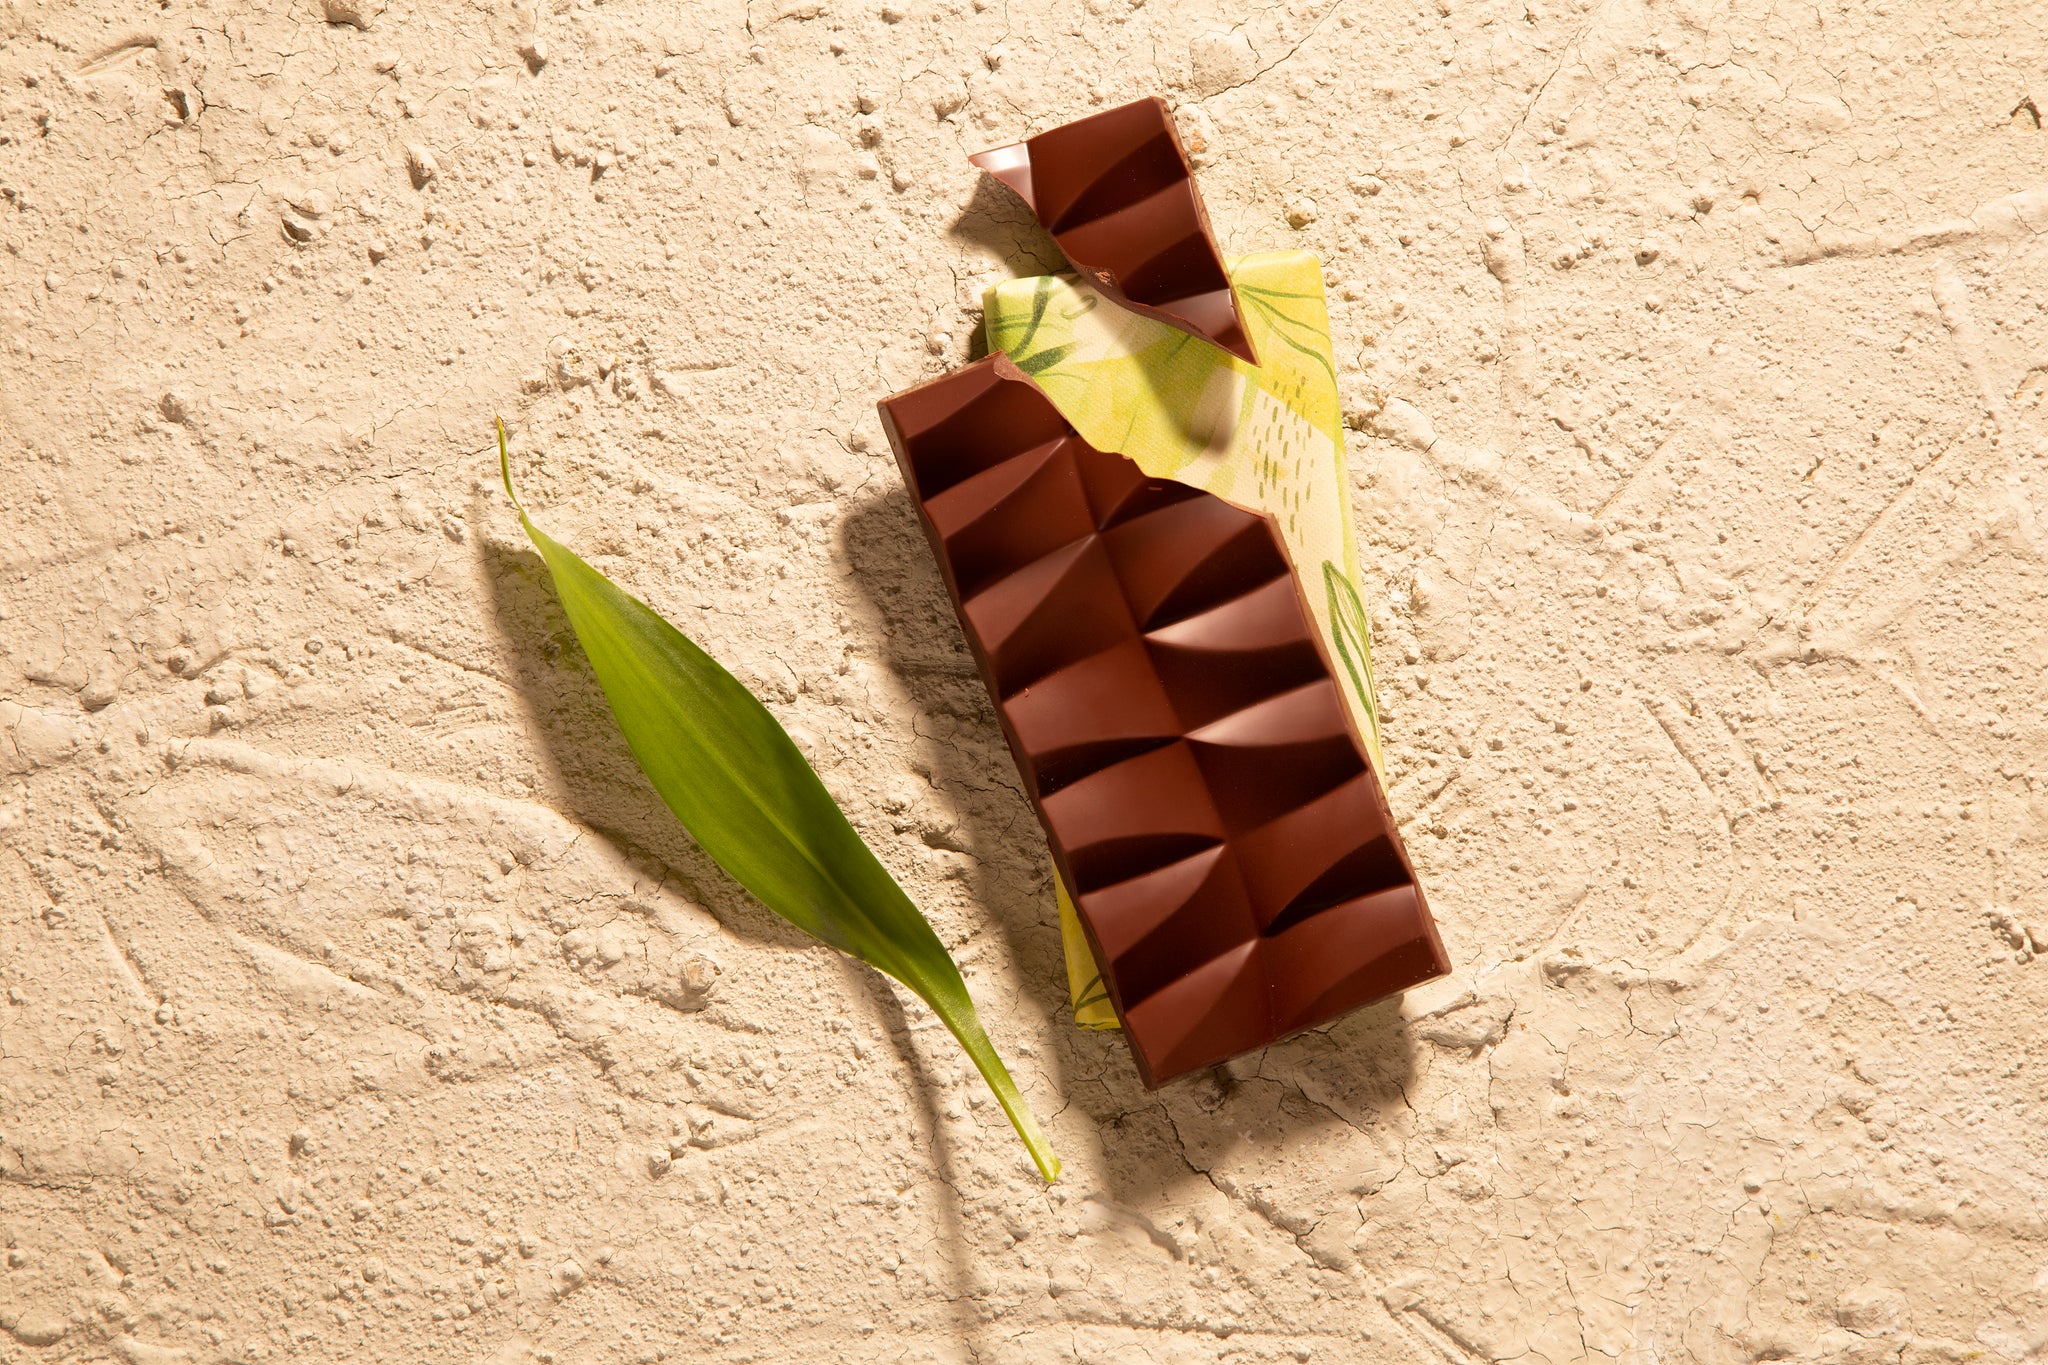 Novo conceito de chocolate: cacau, aveia e muito dengo